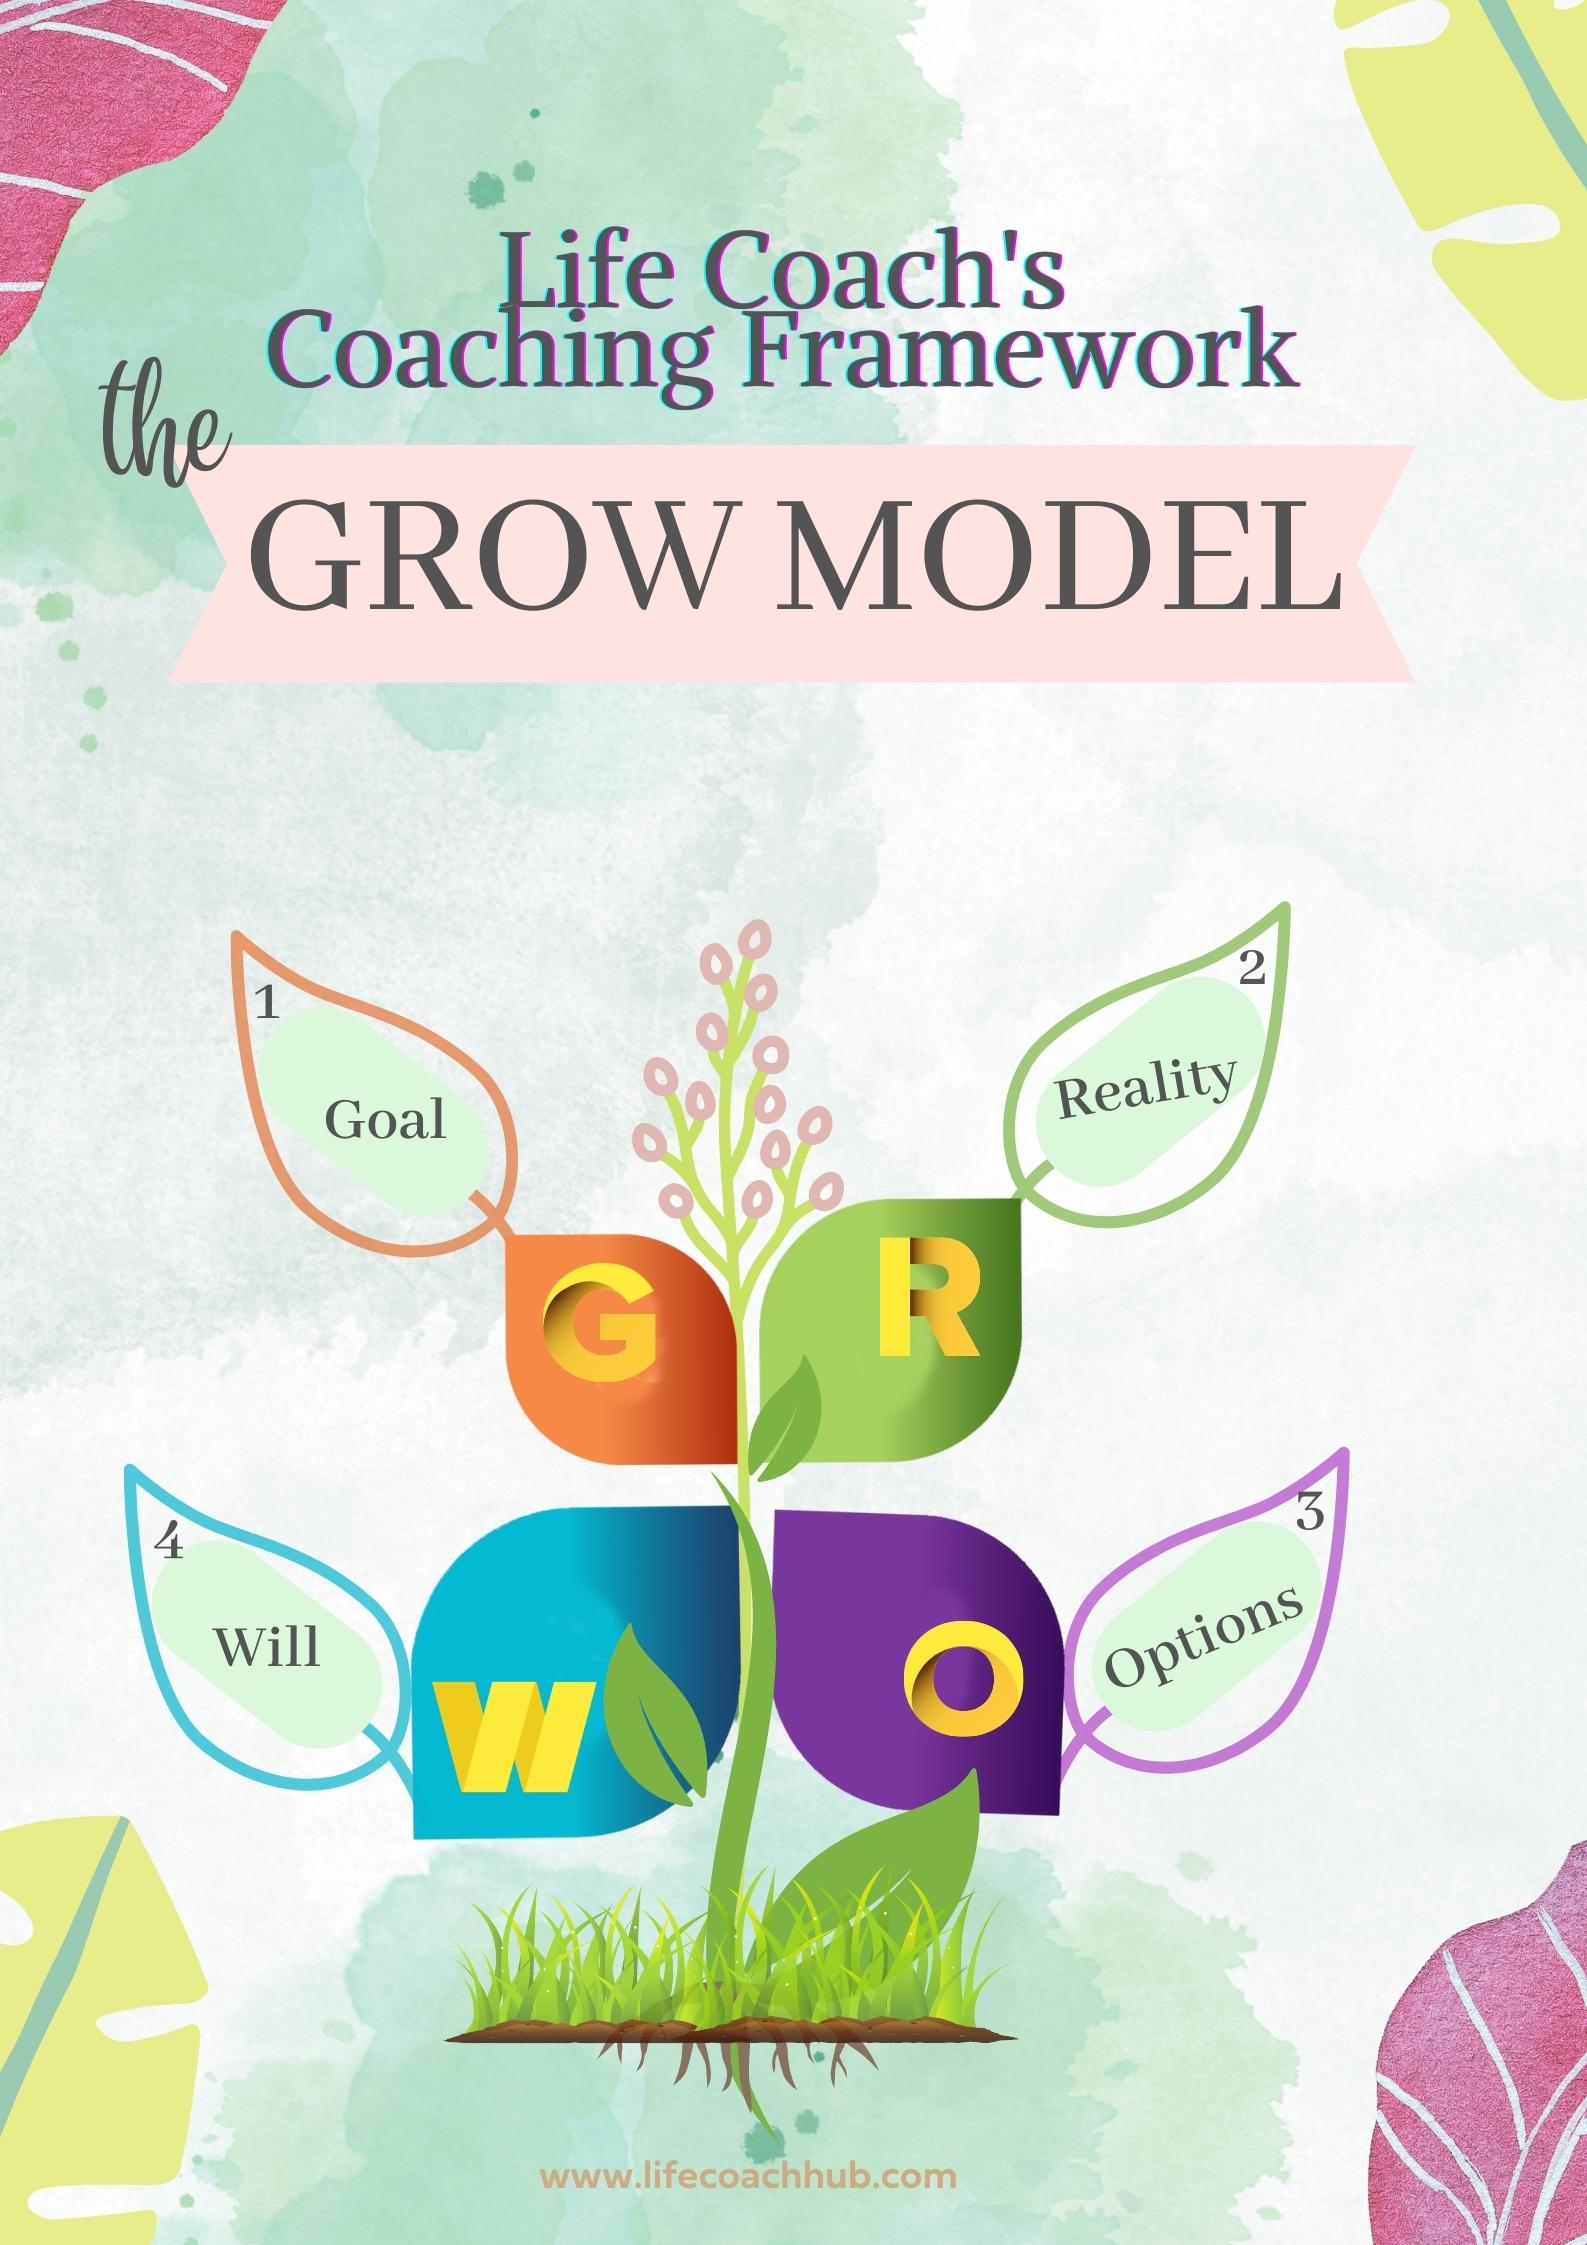 Life coach's coaching framework: The GROW model